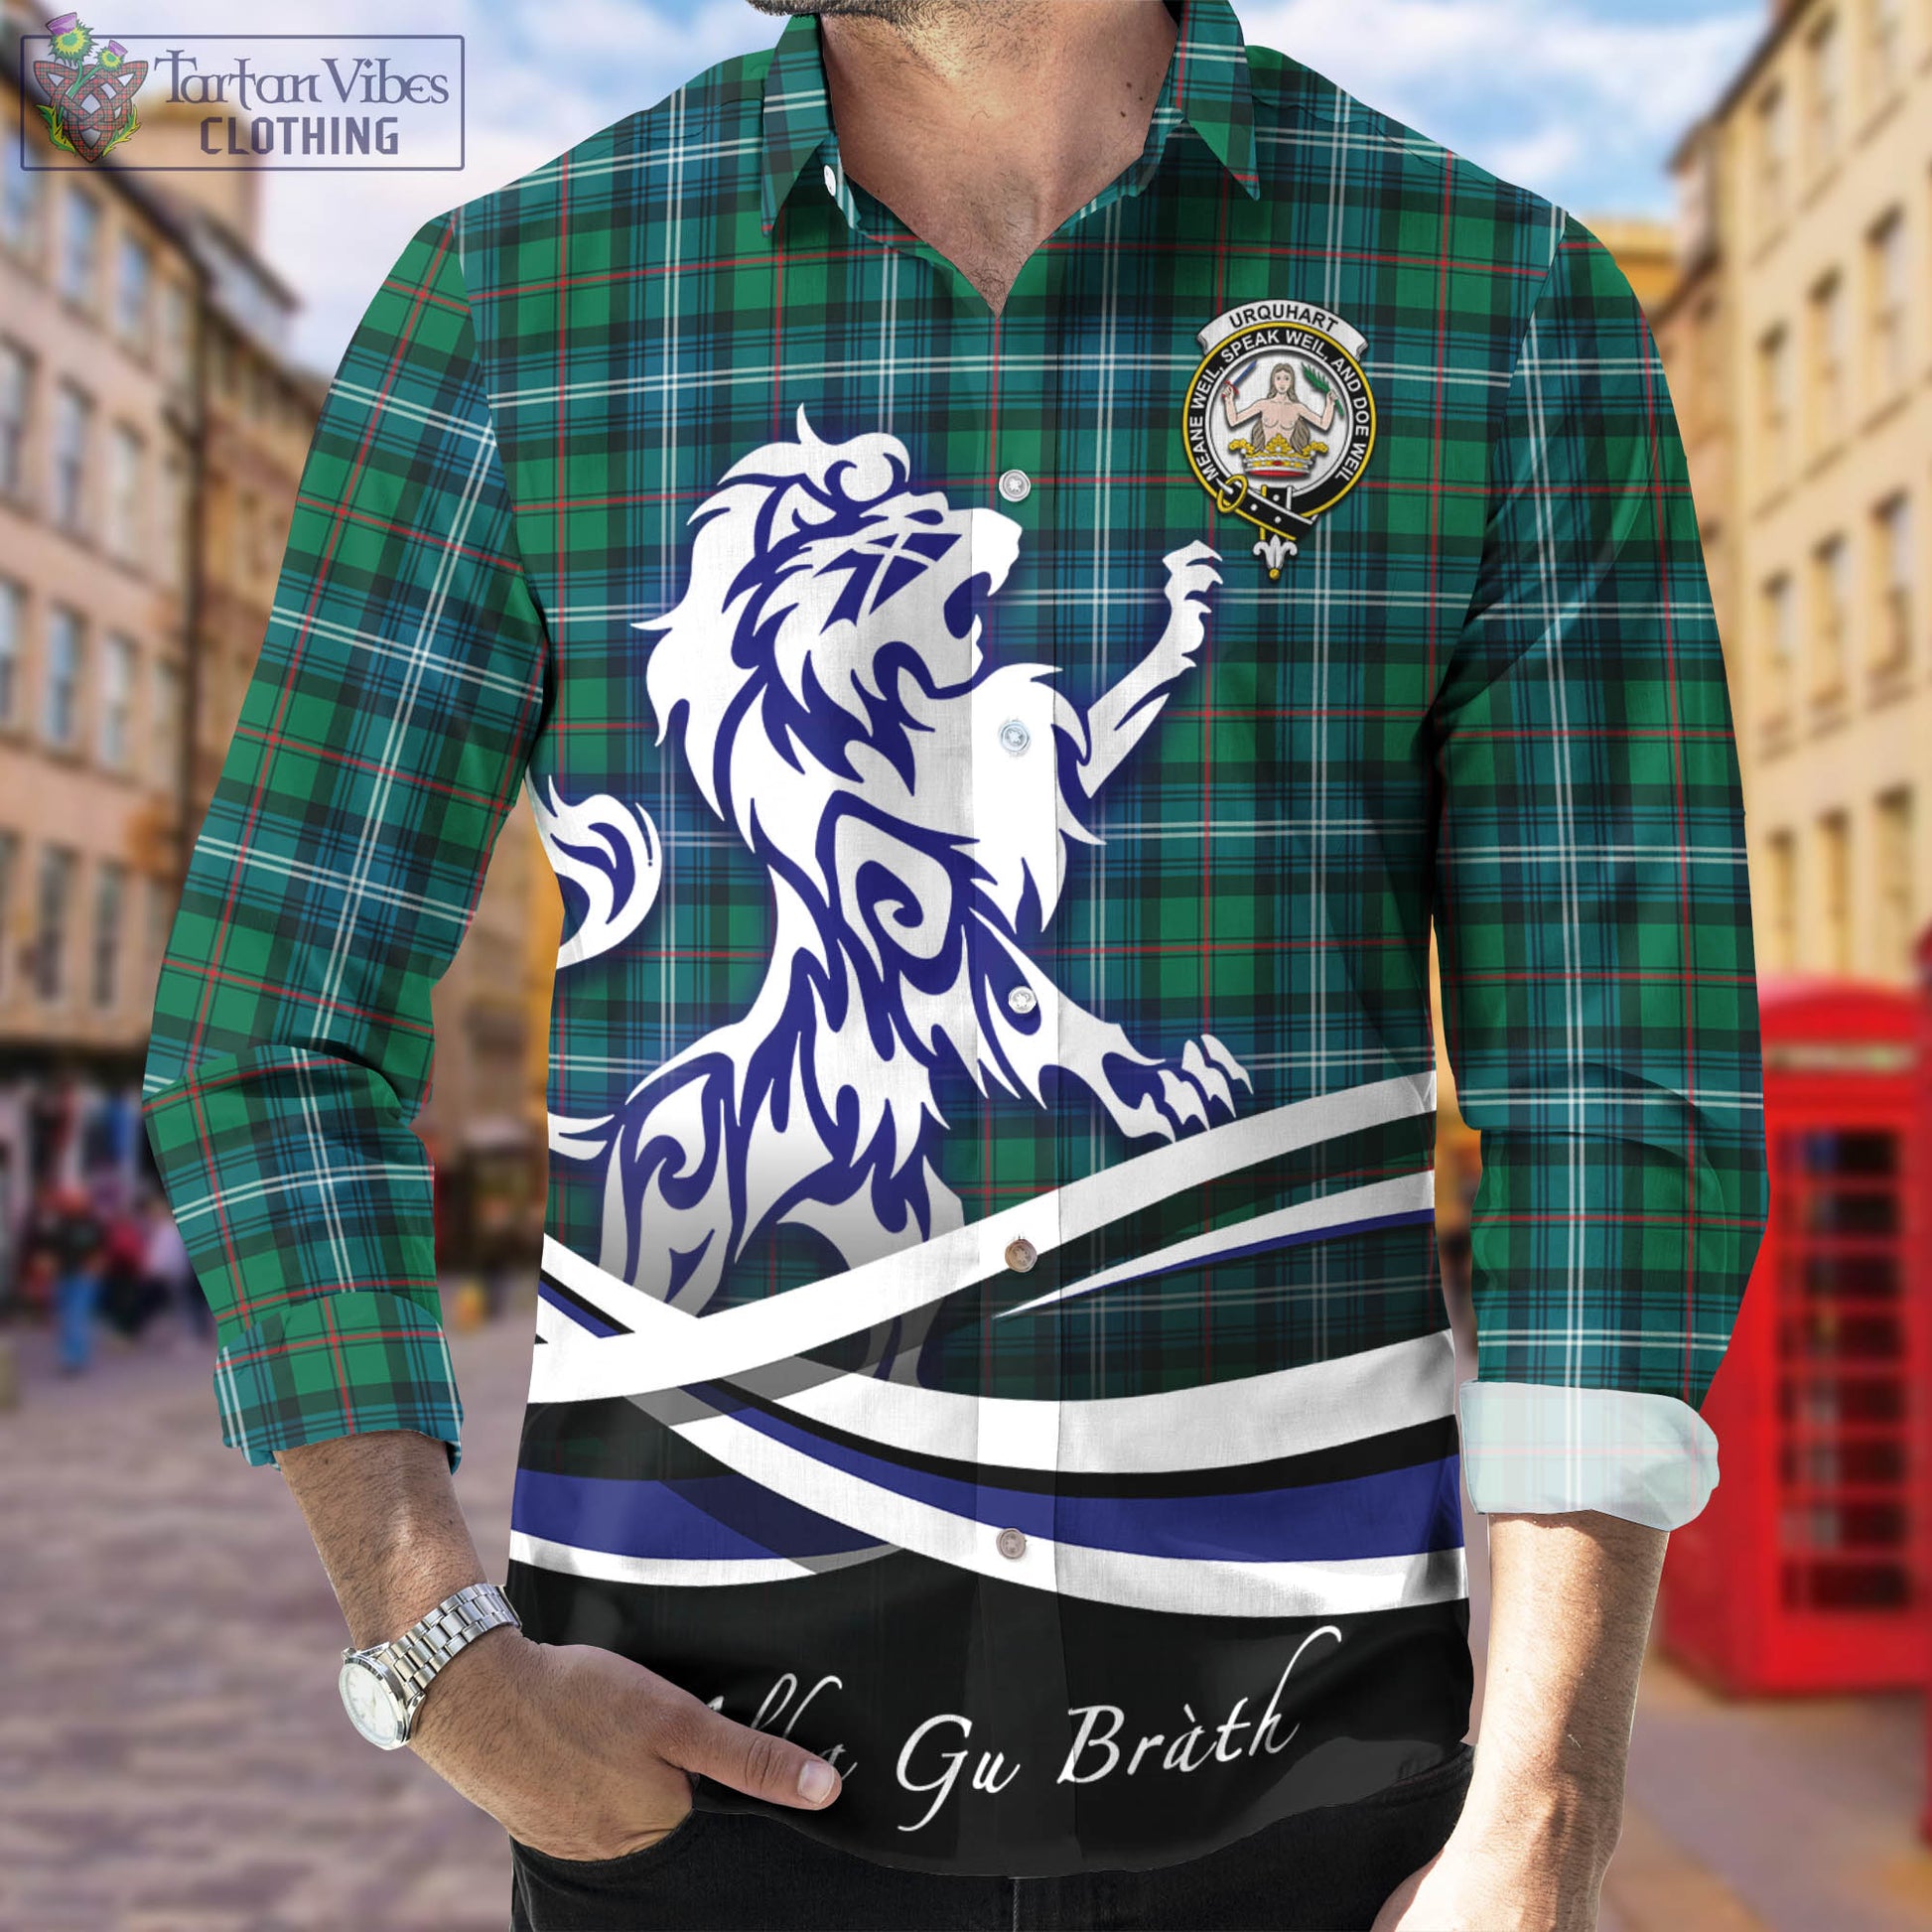 urquhart-ancient-tartan-long-sleeve-button-up-shirt-with-alba-gu-brath-regal-lion-emblem